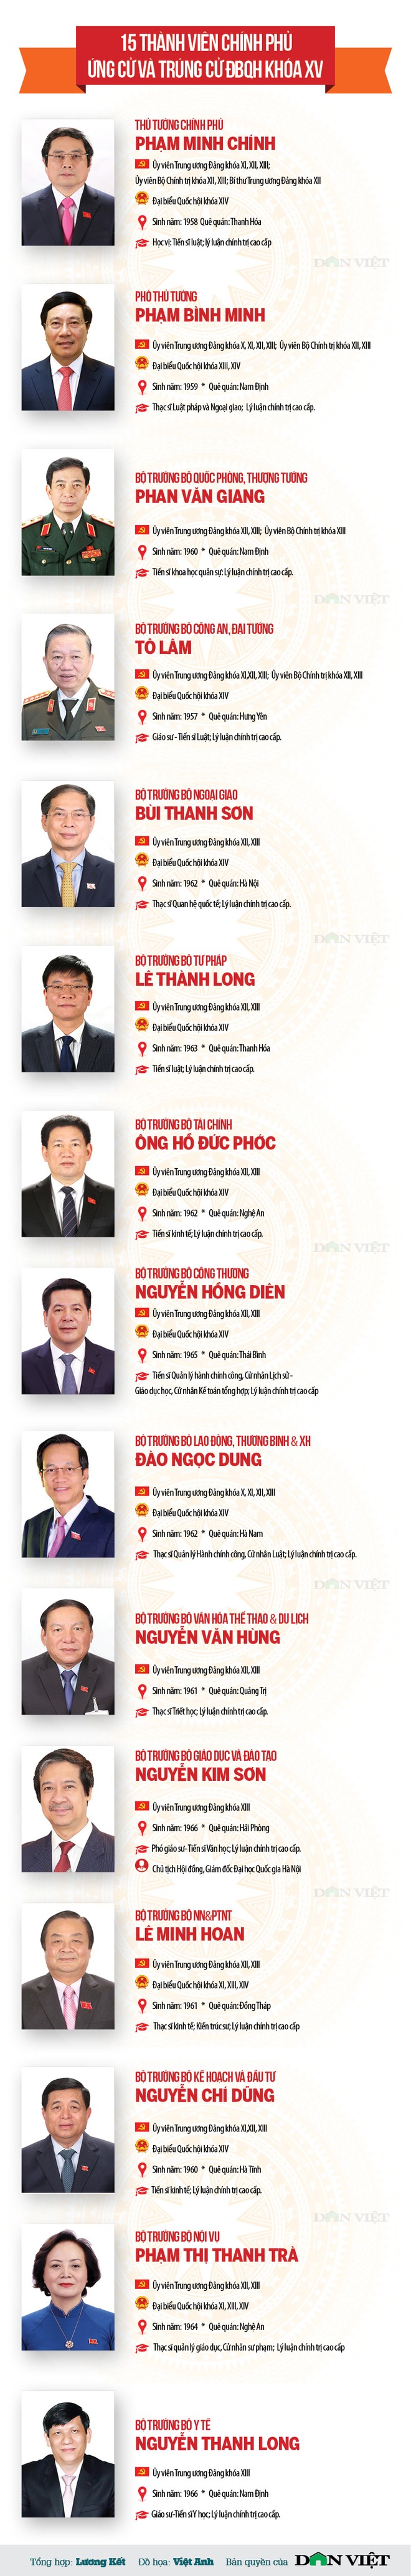 Infographic chân dung 15 thành viên Chính phủ trúng cử đại biểu Quốc hội khóa XV - Ảnh 1.